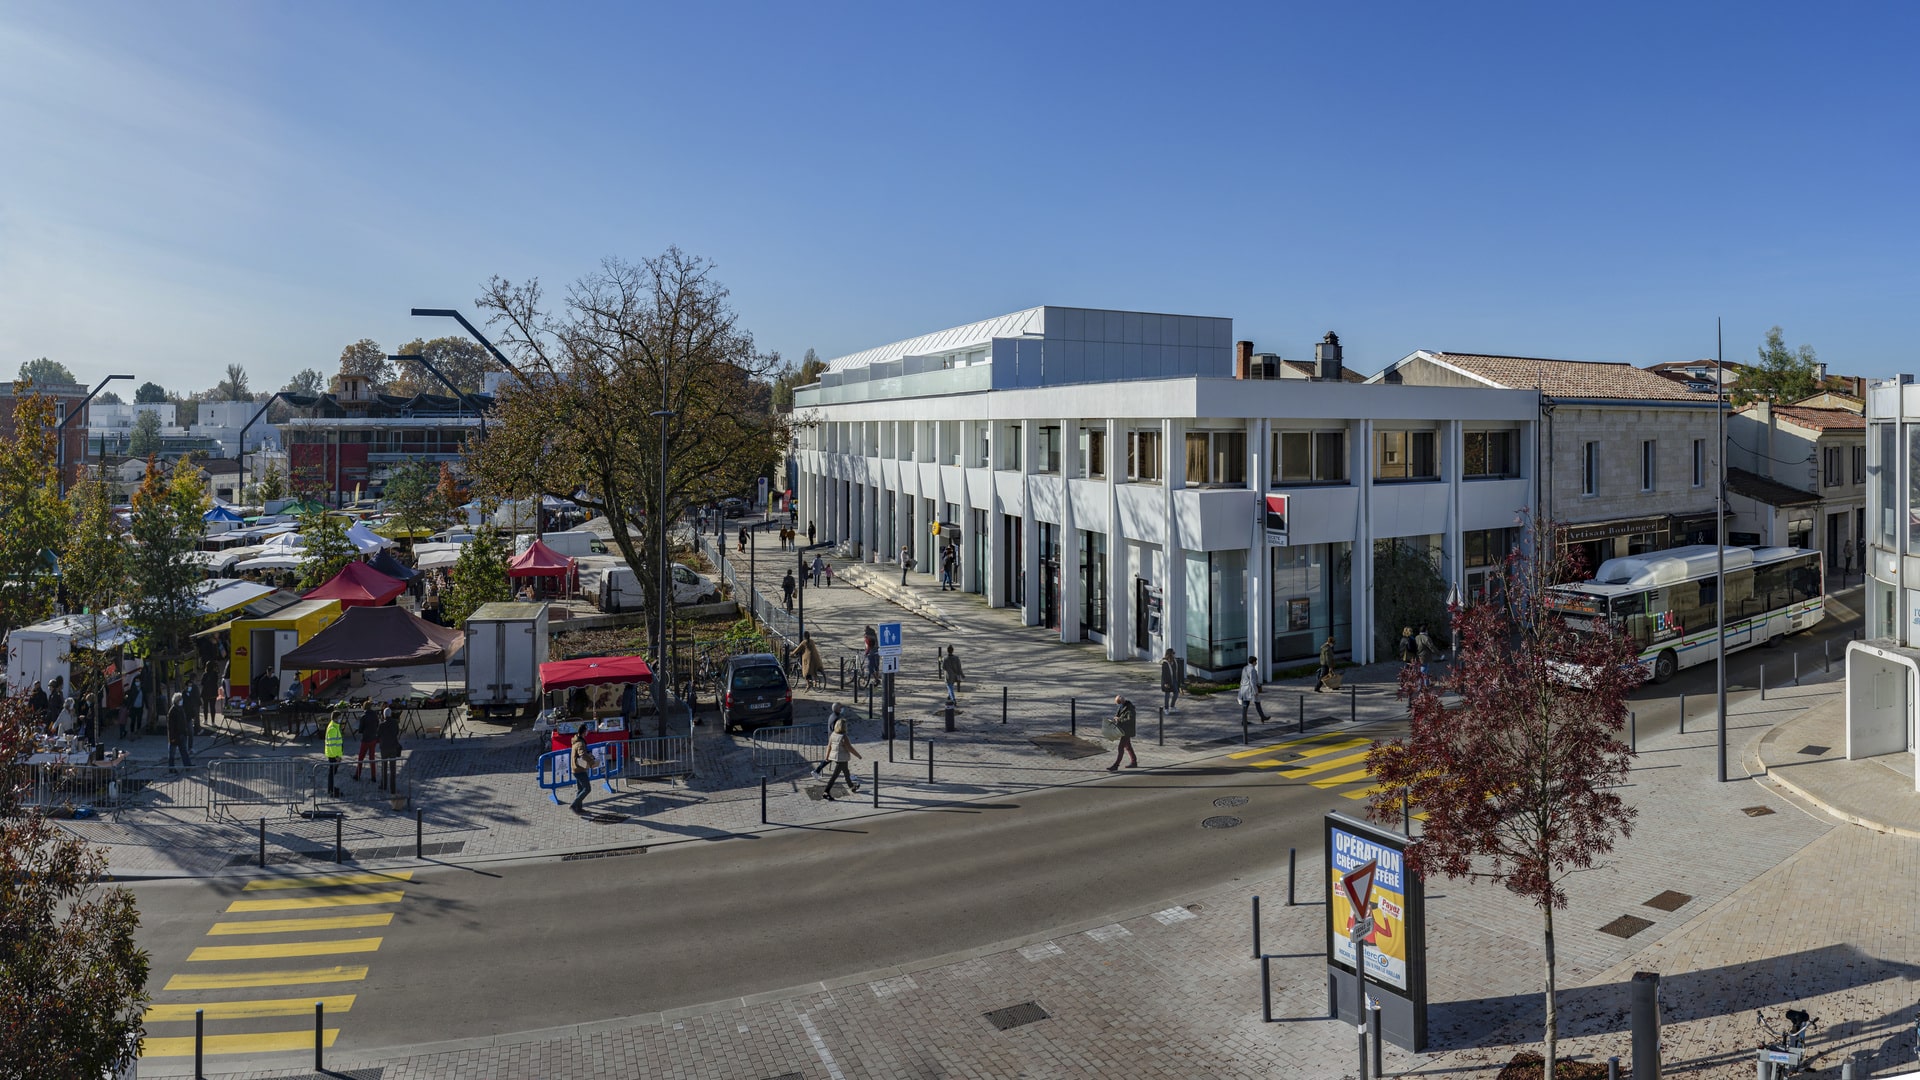 Panorama du quartier urbain avec Le Cosmopolitain à gauche, montrant son architecture contemporaine blanche et sa conception angulaire. Des passants traversent la rue sur un passage piéton, et un marché de plein air occupe l'espace à droite.